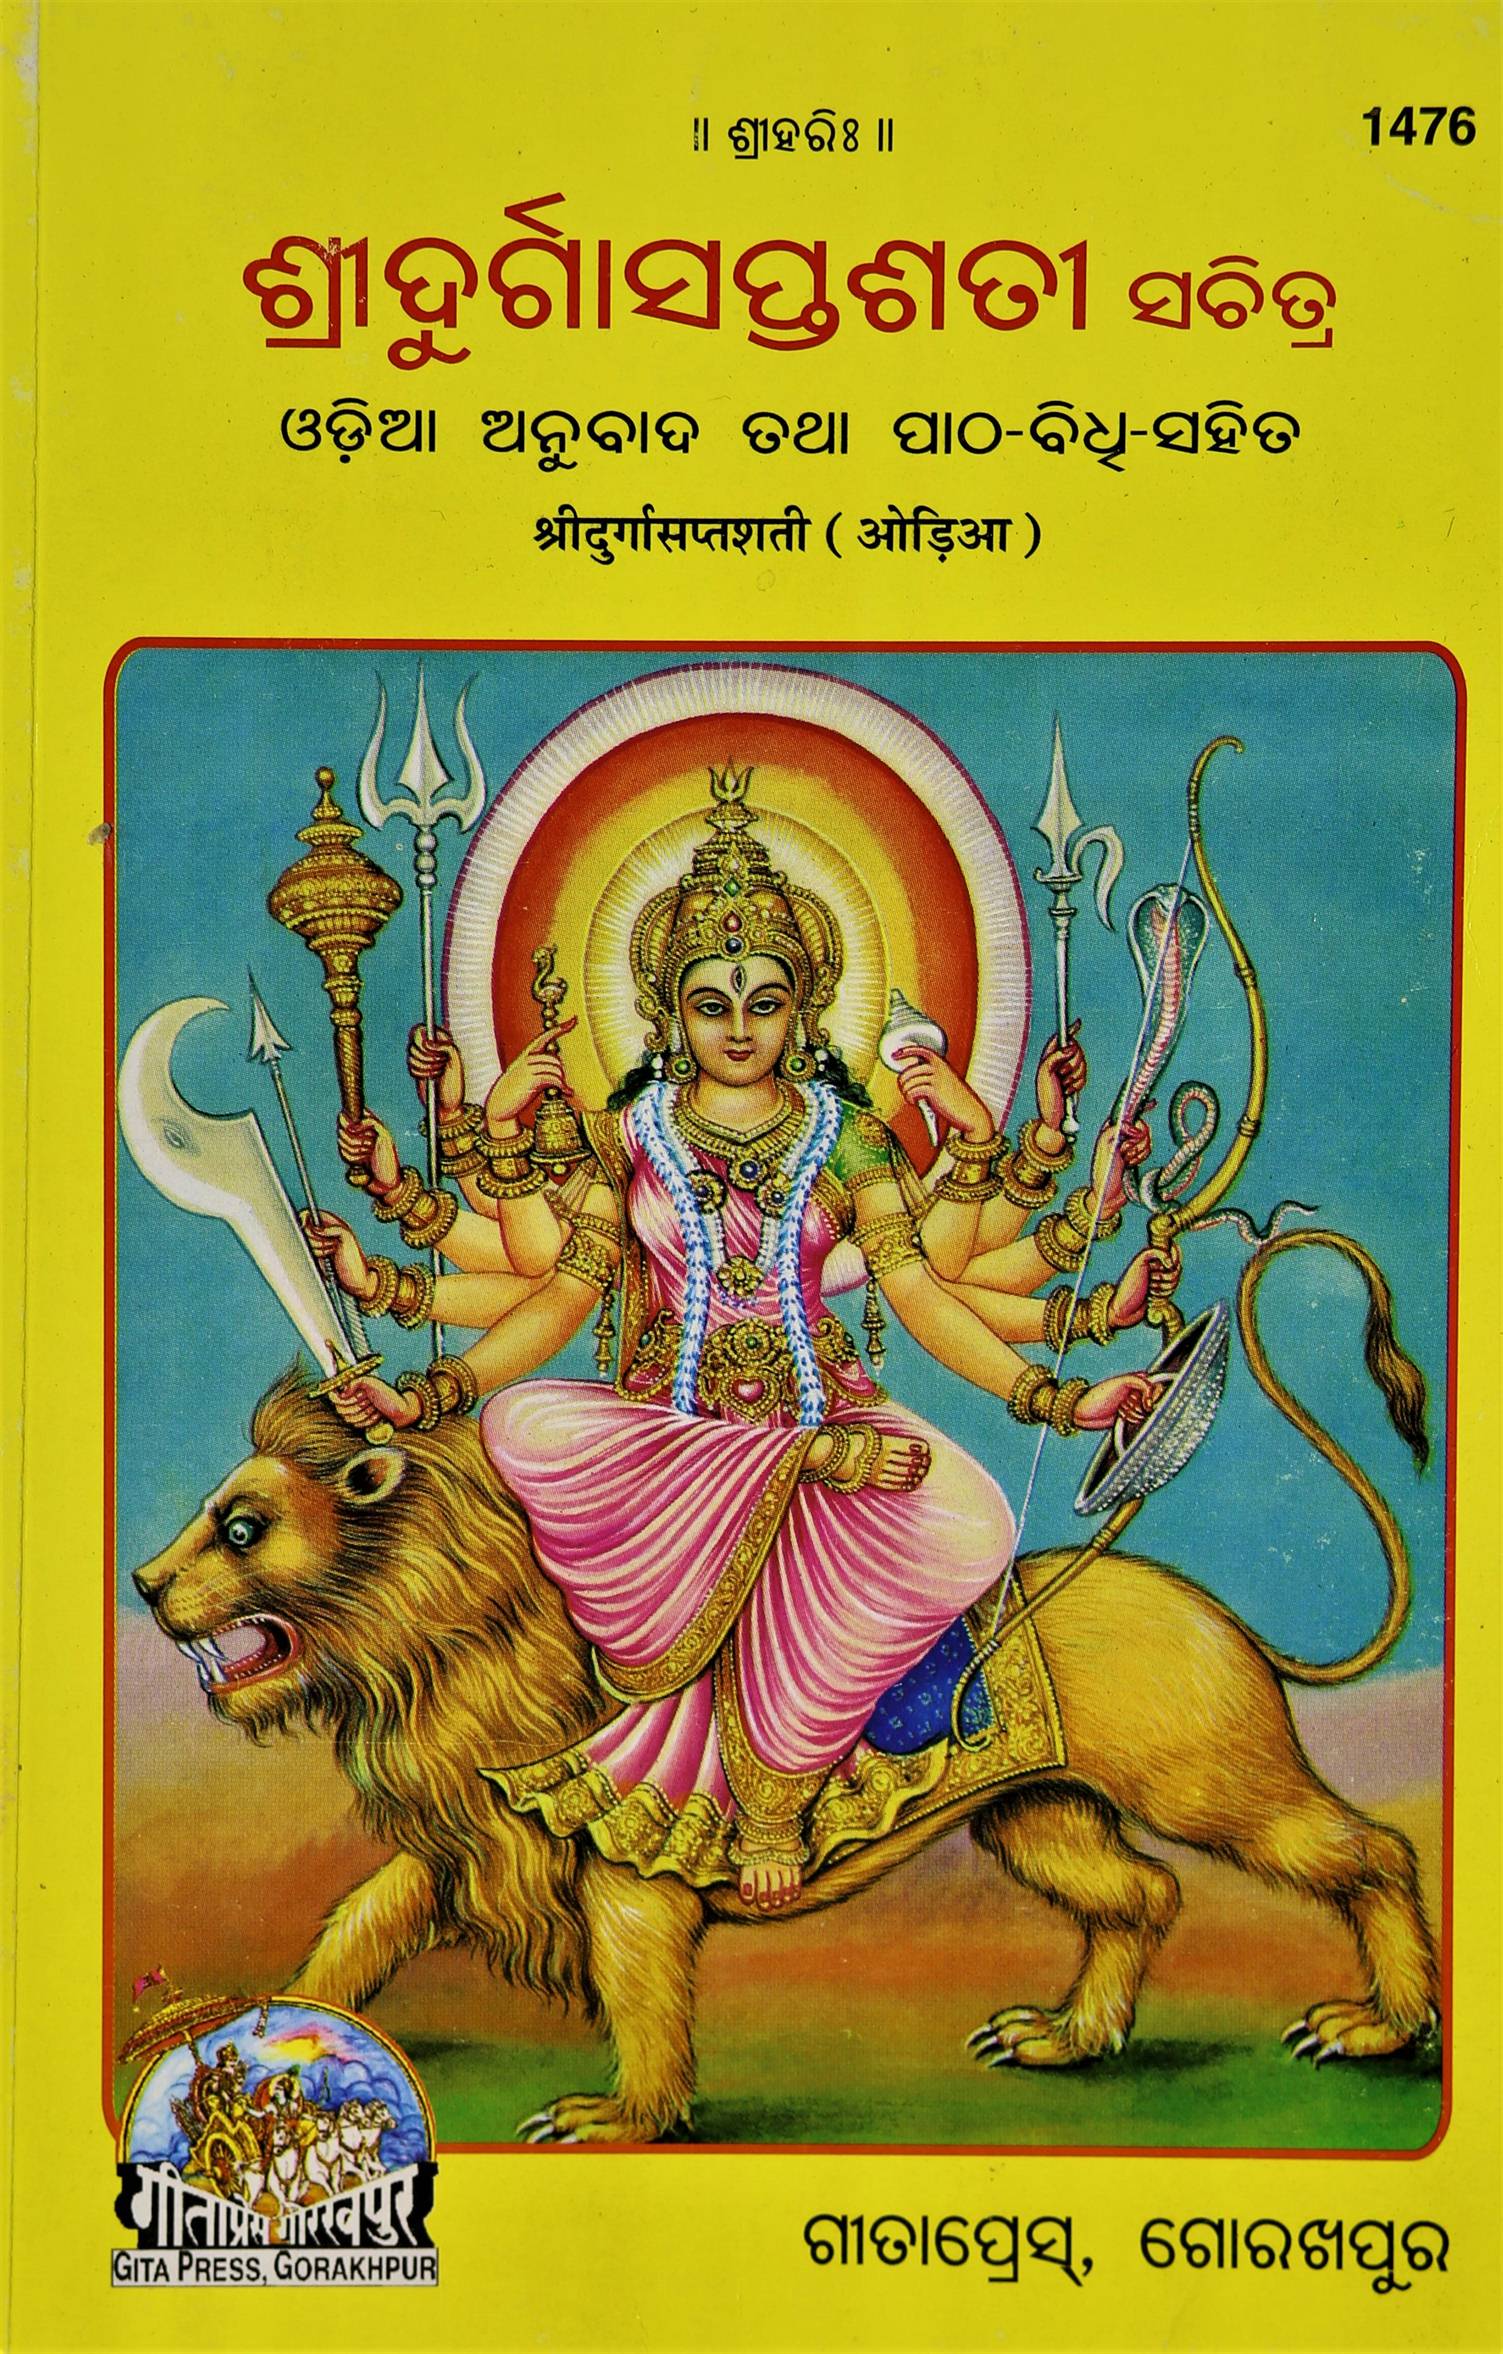 Shri Durga Saptshati